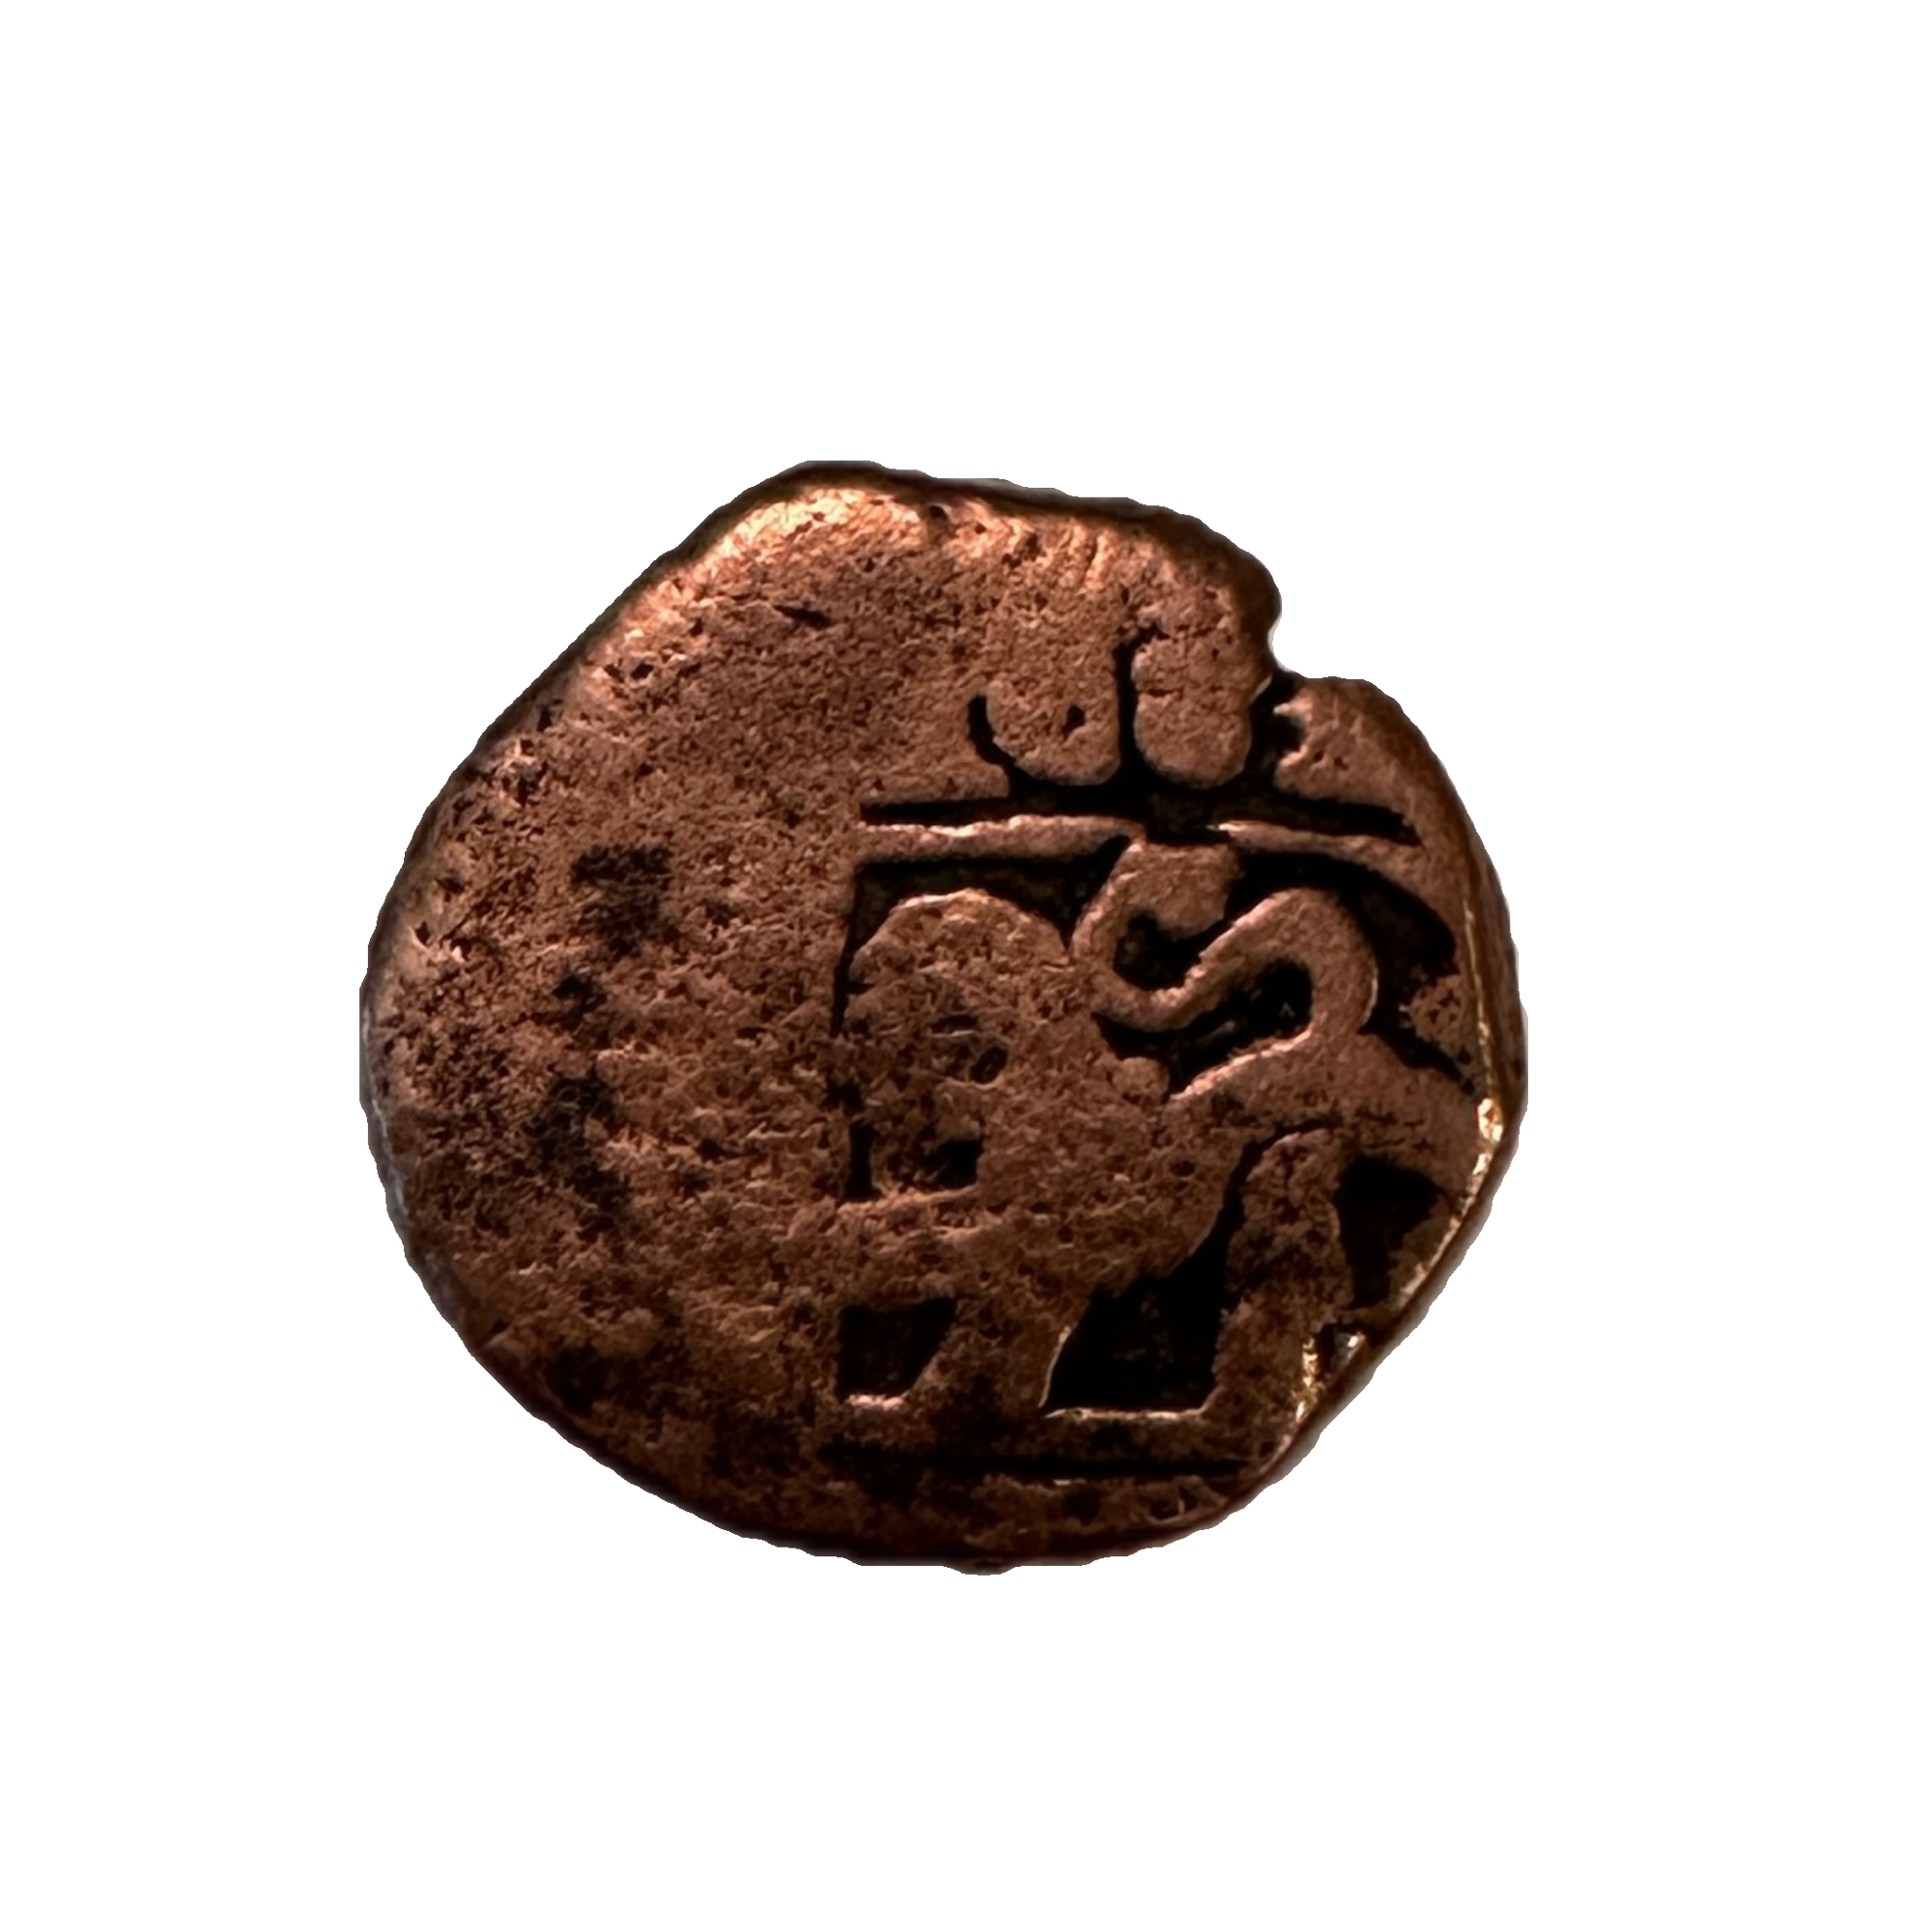 Pirate copper cob, 1600's spanish treasure coin